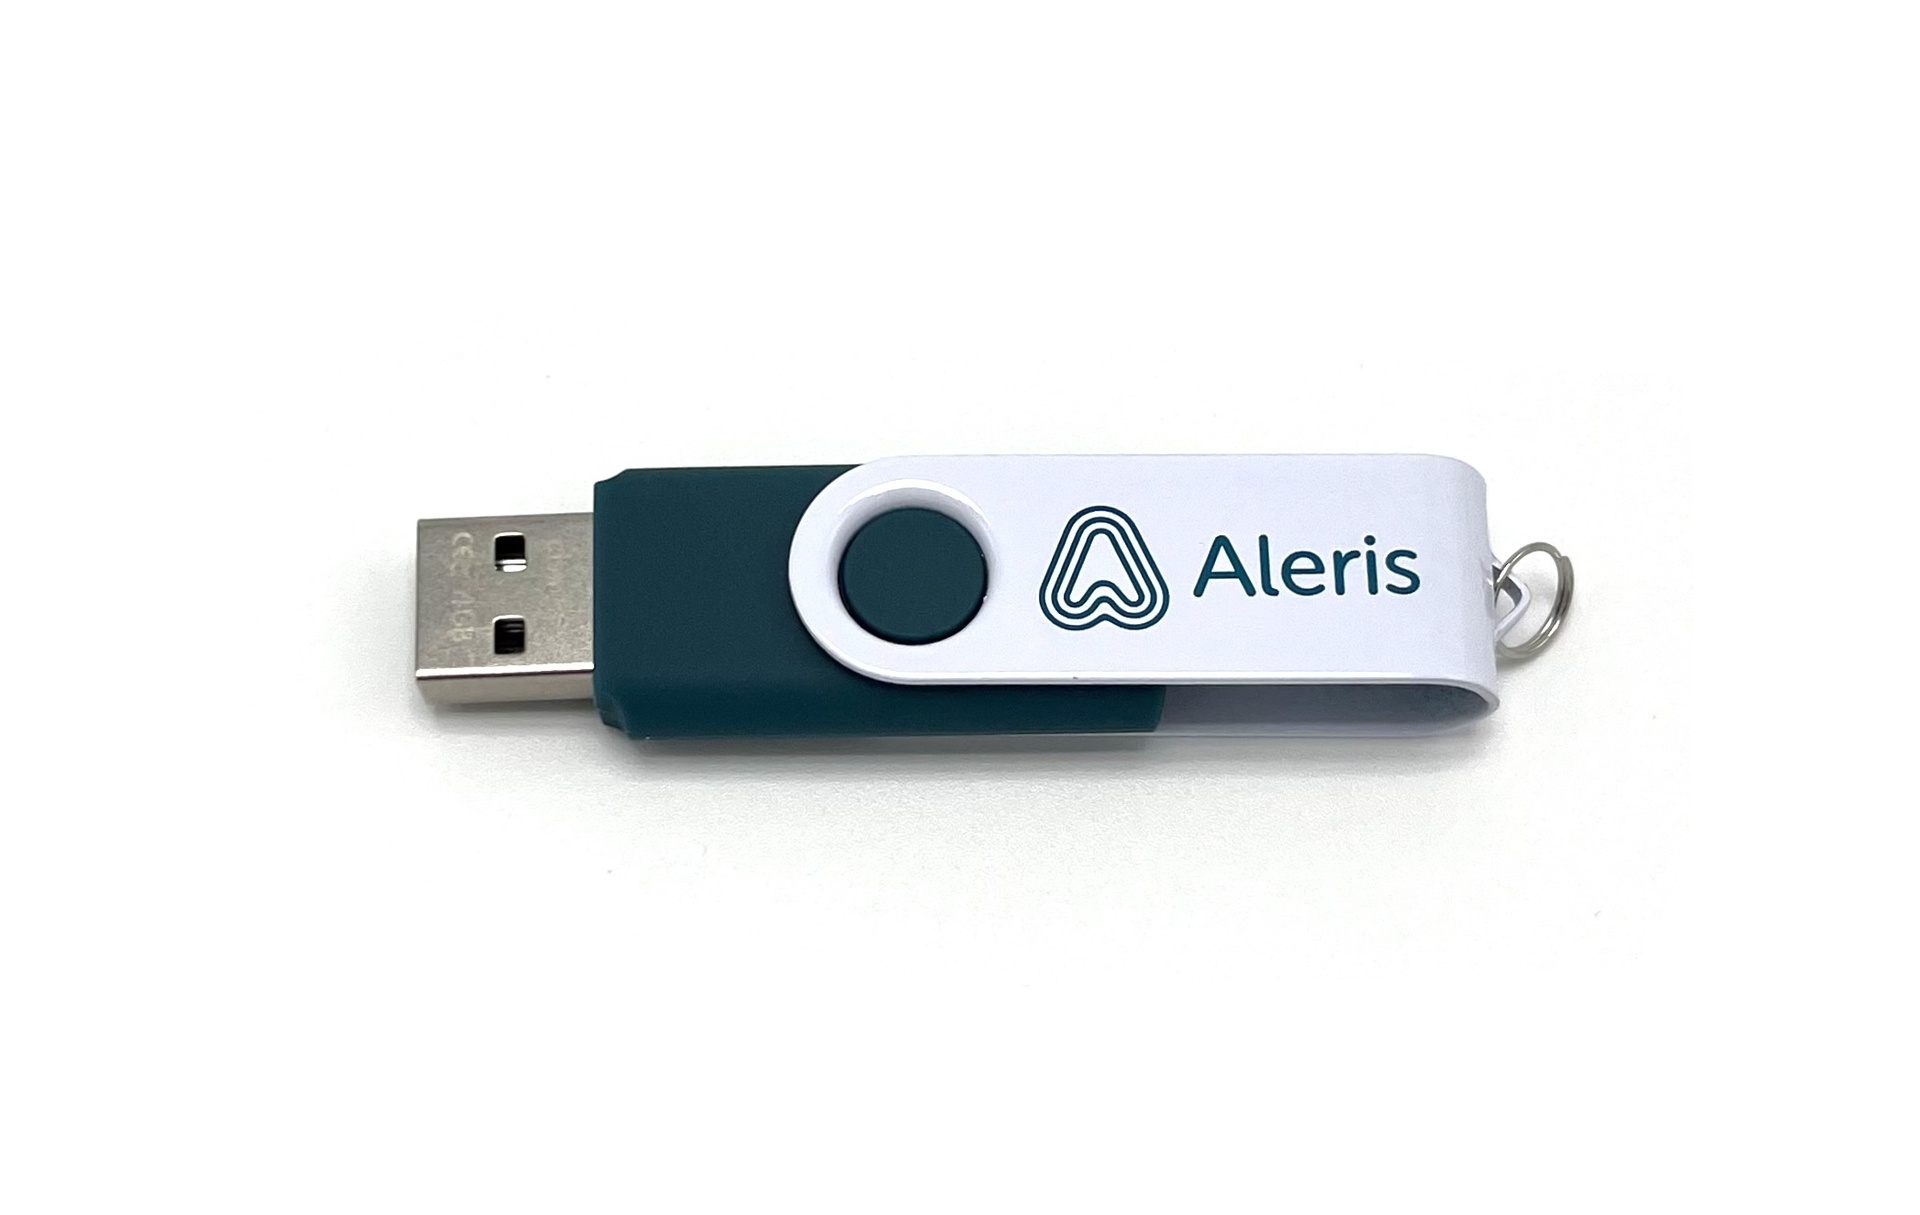 [EEALERIS20047] Nytt större 4 GB USB minne med logo 10st/fp